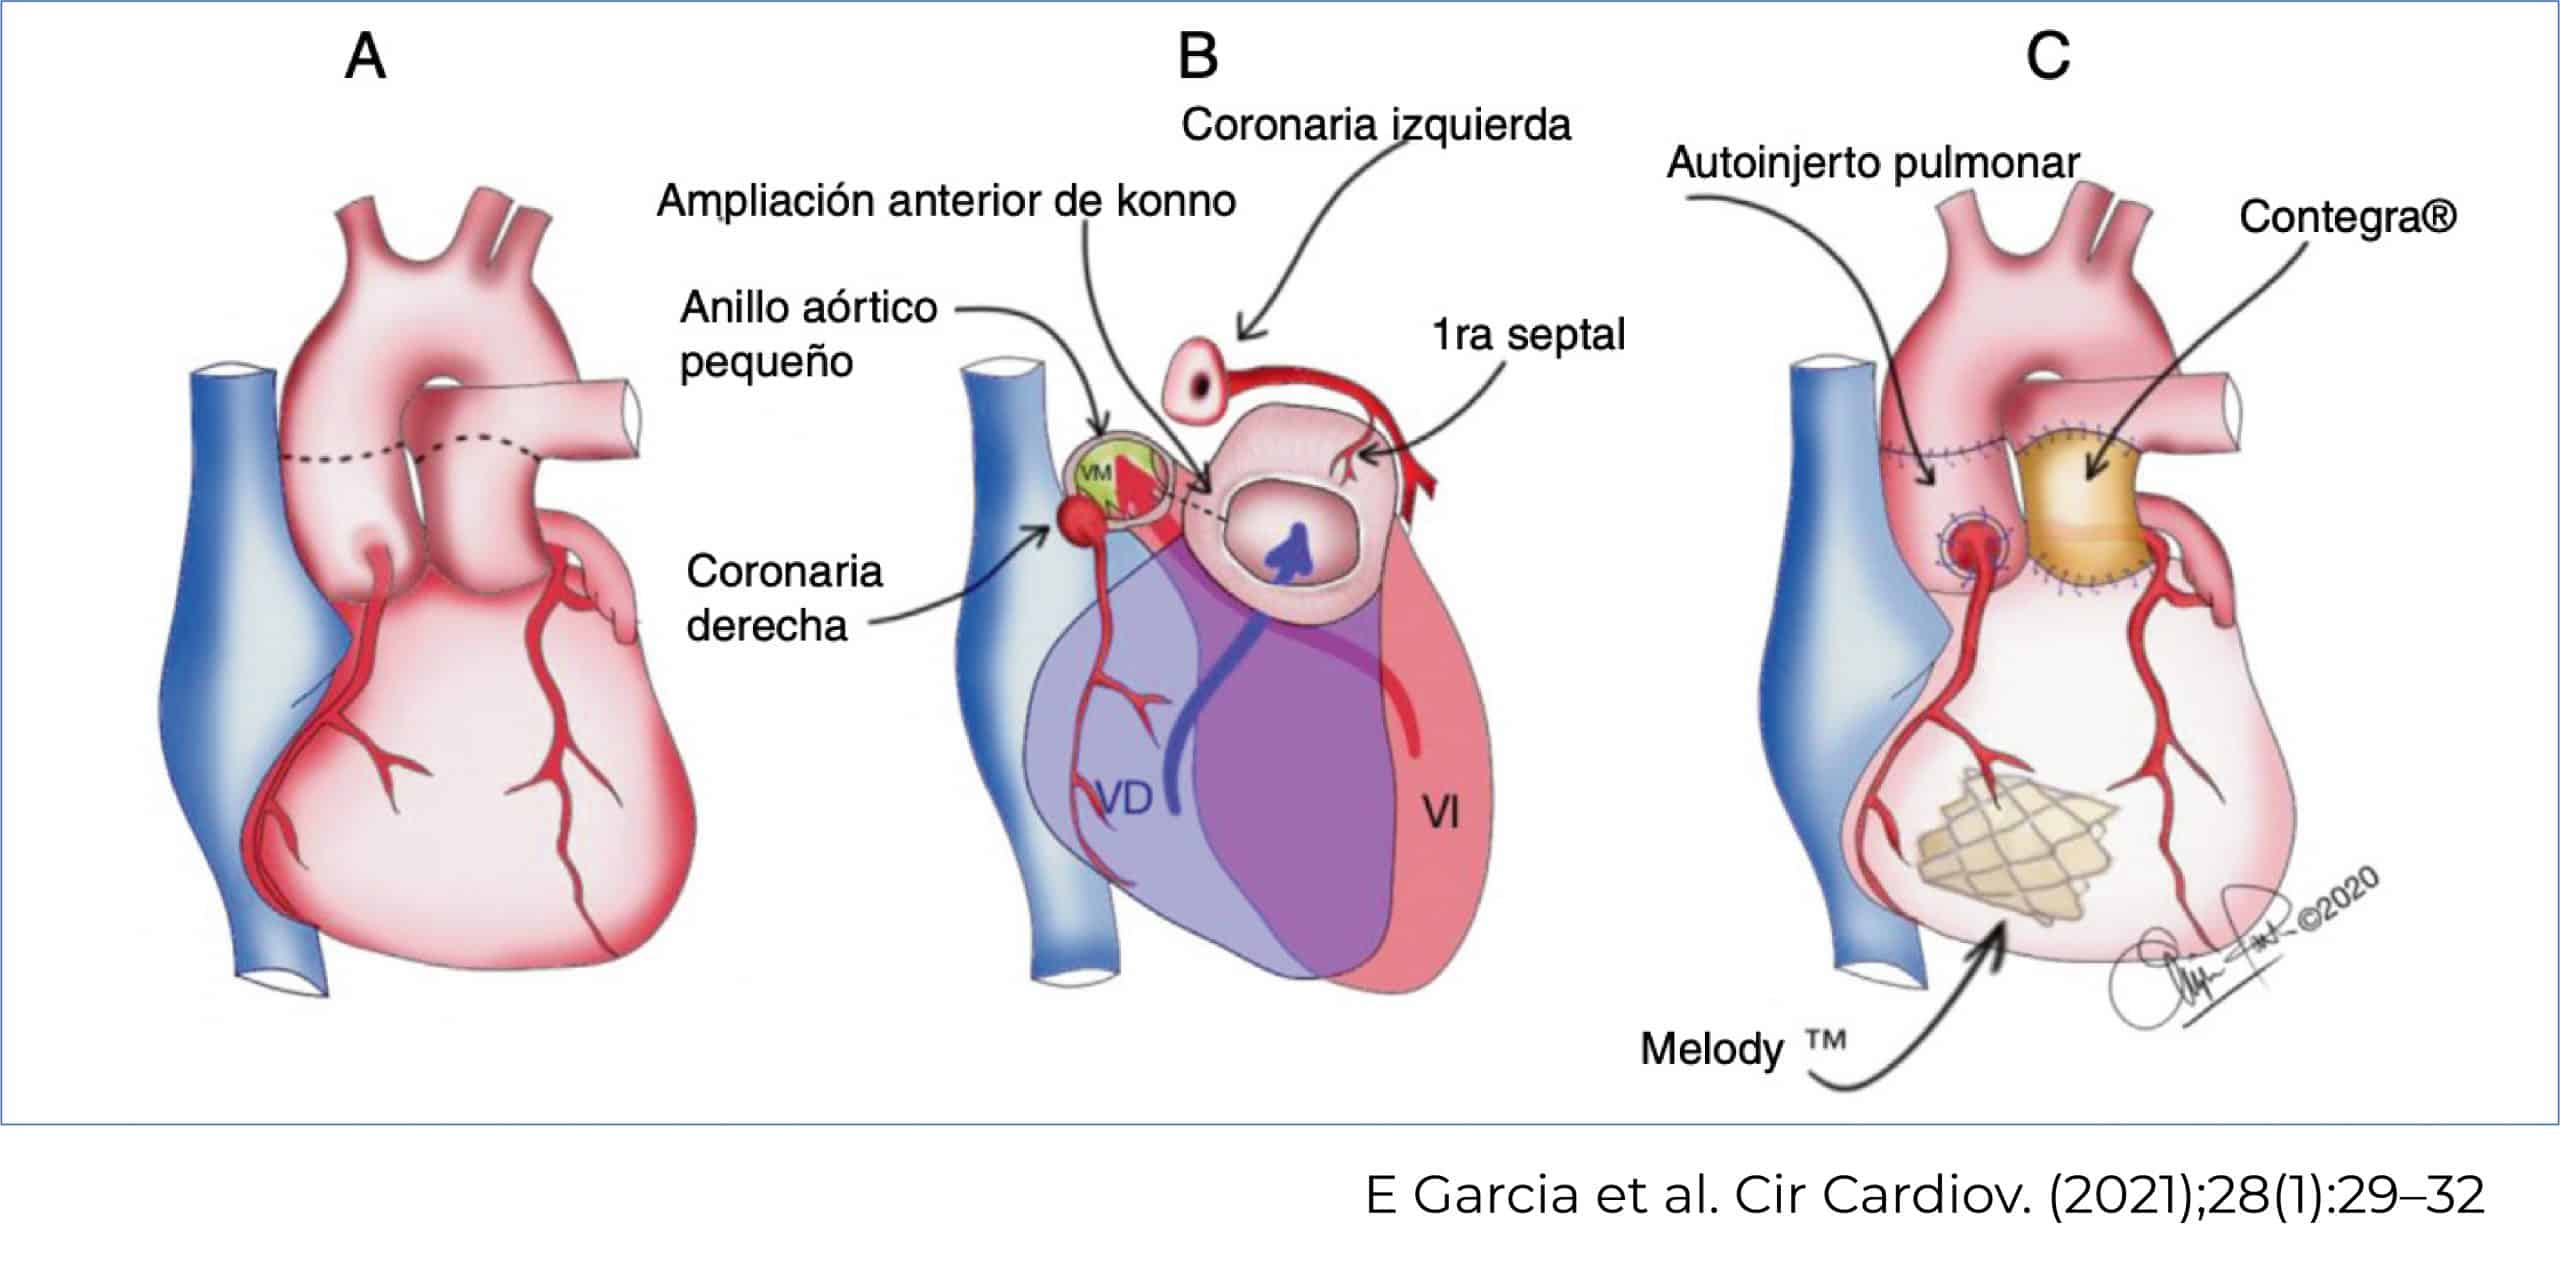 postoperatorio cx cardiaca ped